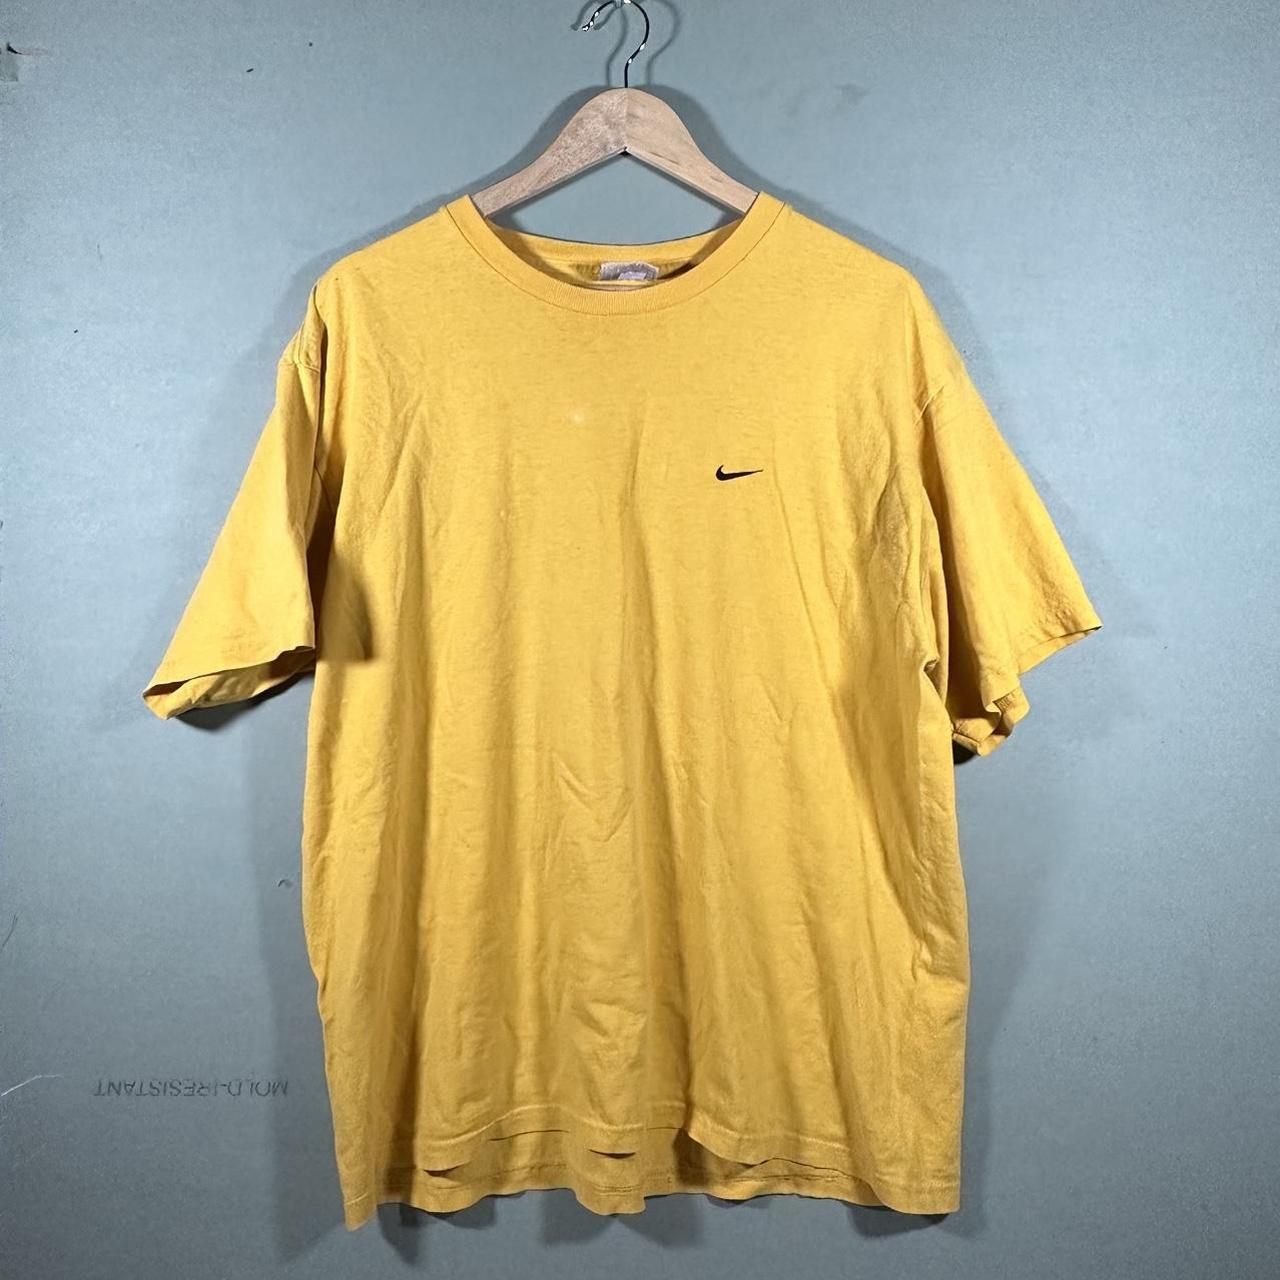 Vintage Yellow Swoosh Nike Shirt This... - Depop